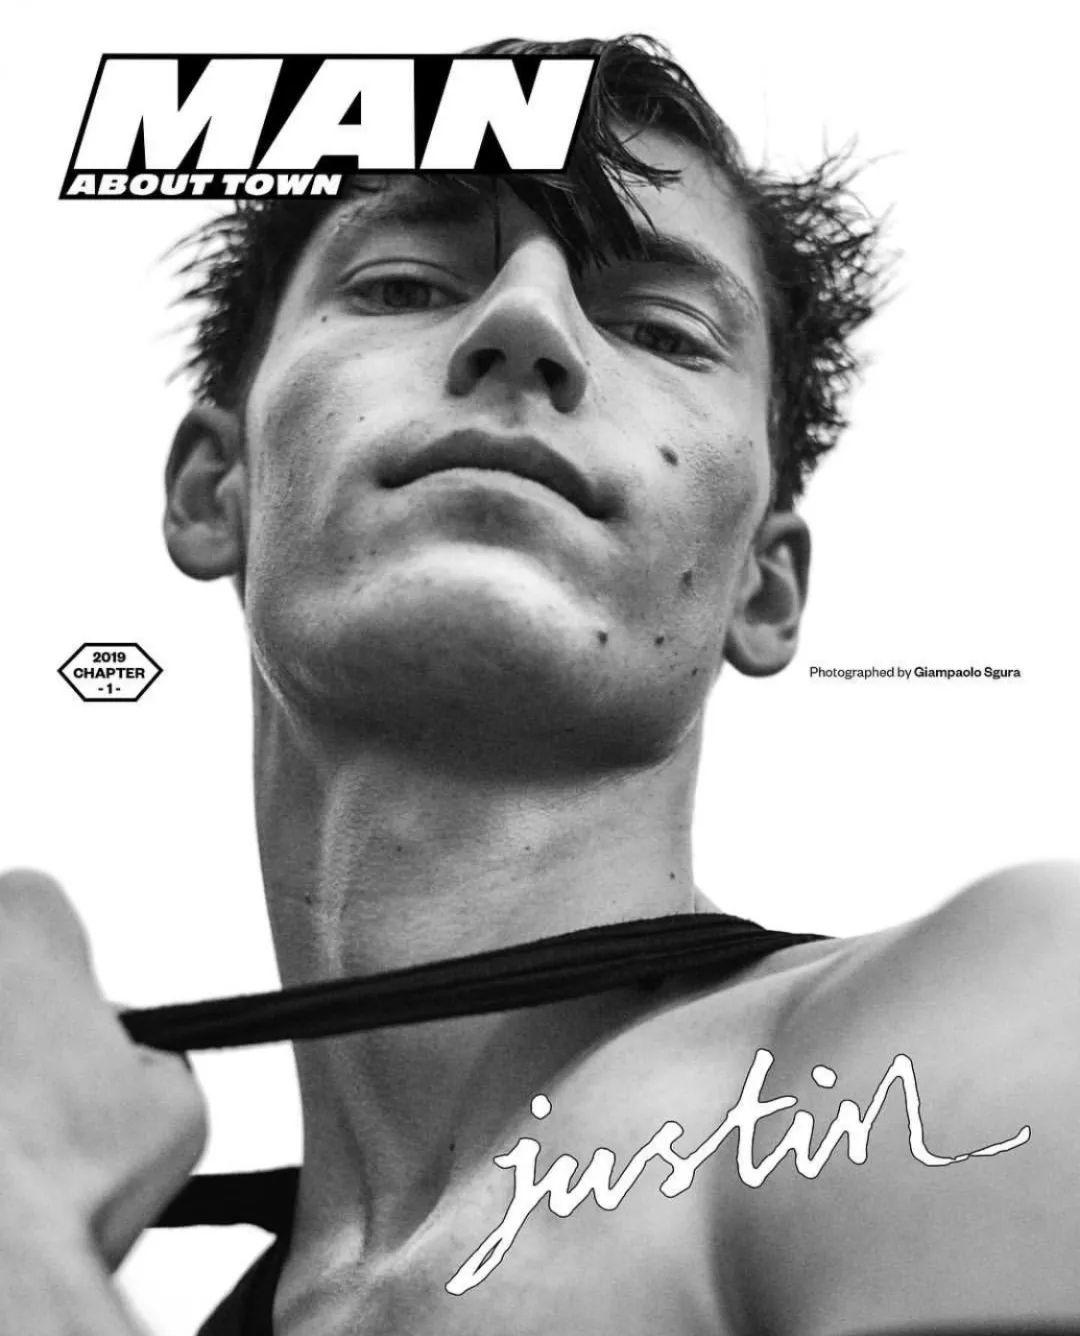 英国男刊杂志《Man about town》封面，这个阵容真的厉害！